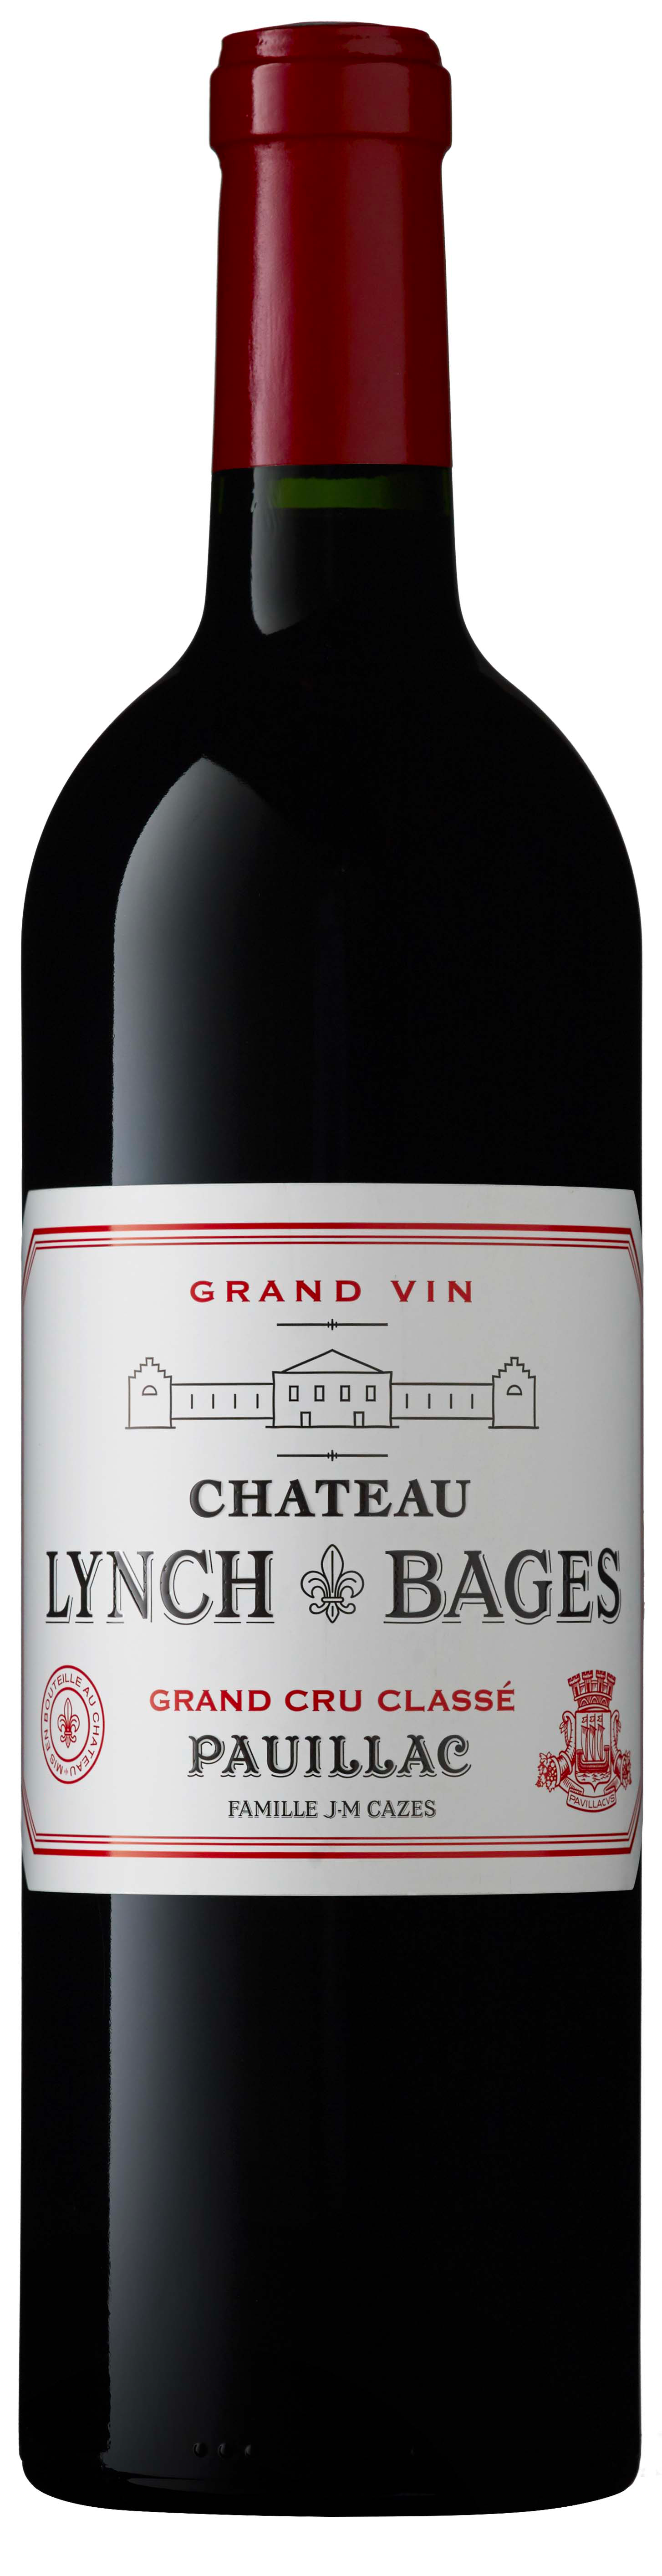 Lynch bages 2015 5 me Grand cru class Pauillac, Bordeaux rouge